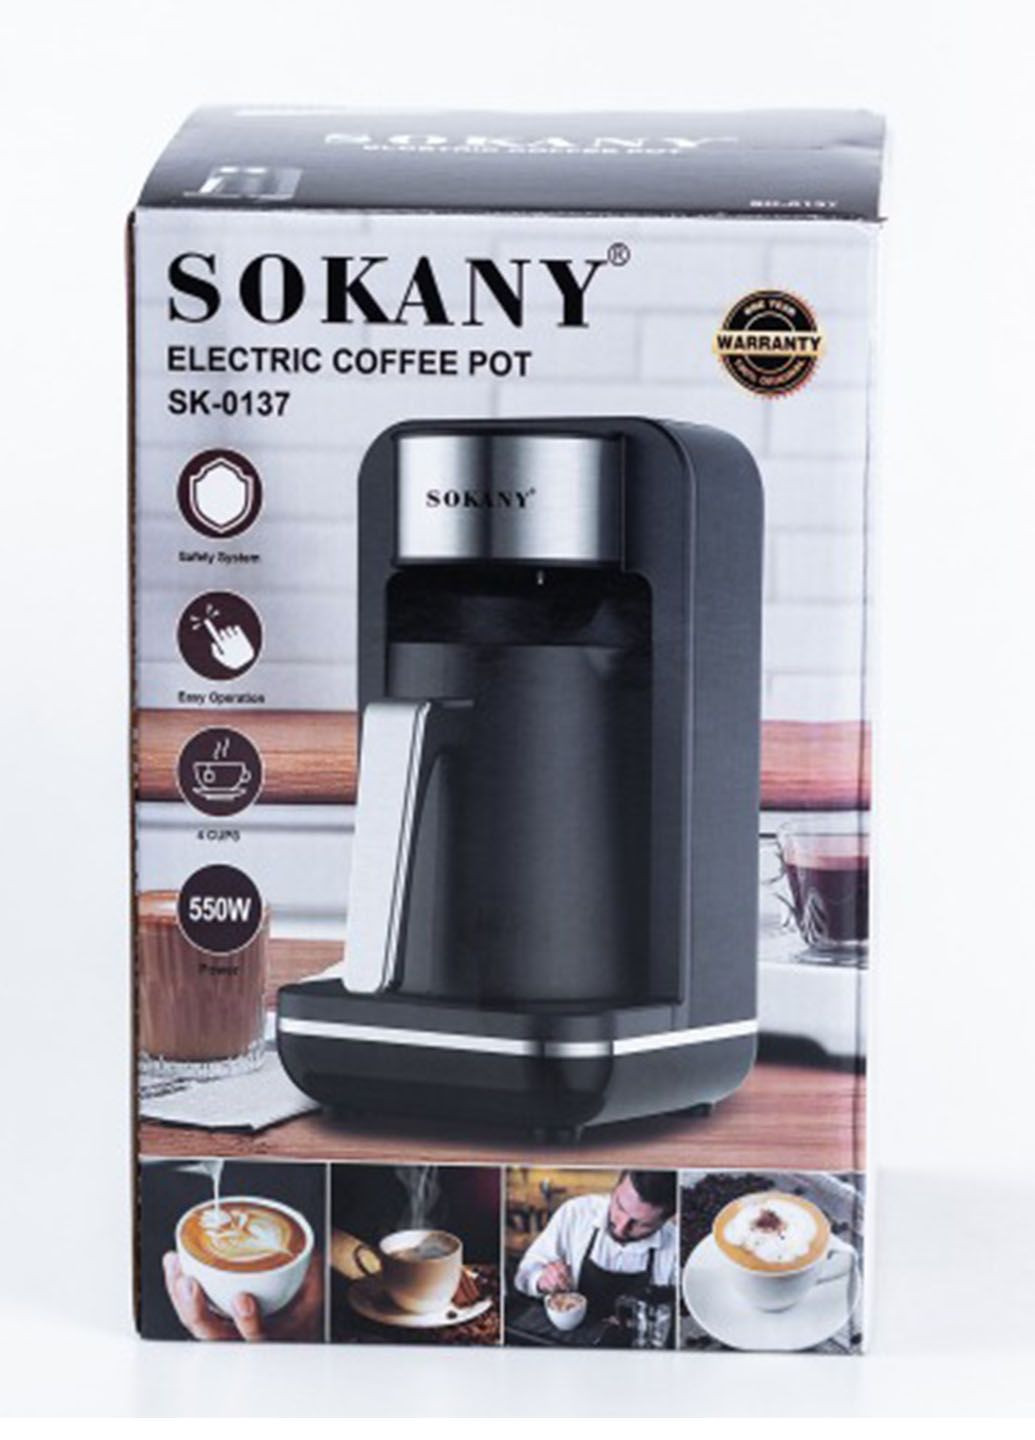 Турка электрическая SK-0137 для кофе 550 Вт с функцией поддержания тепла 250 мл Sokany sk- 0137 (281155380)